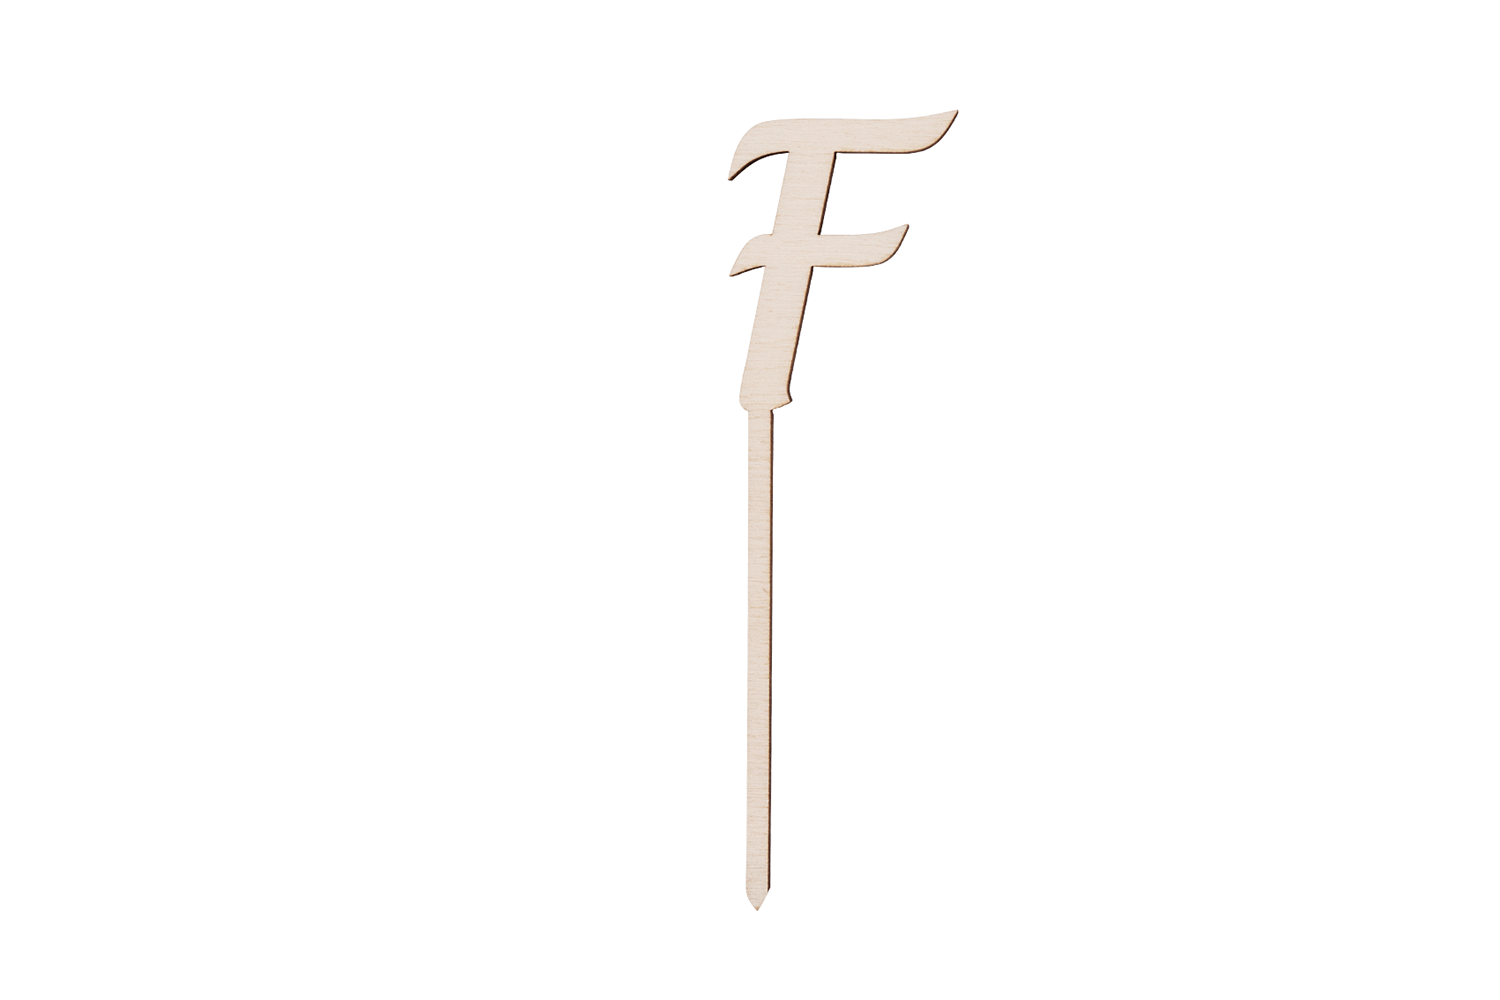 Ein Caketopper mit dem Buchstaben F